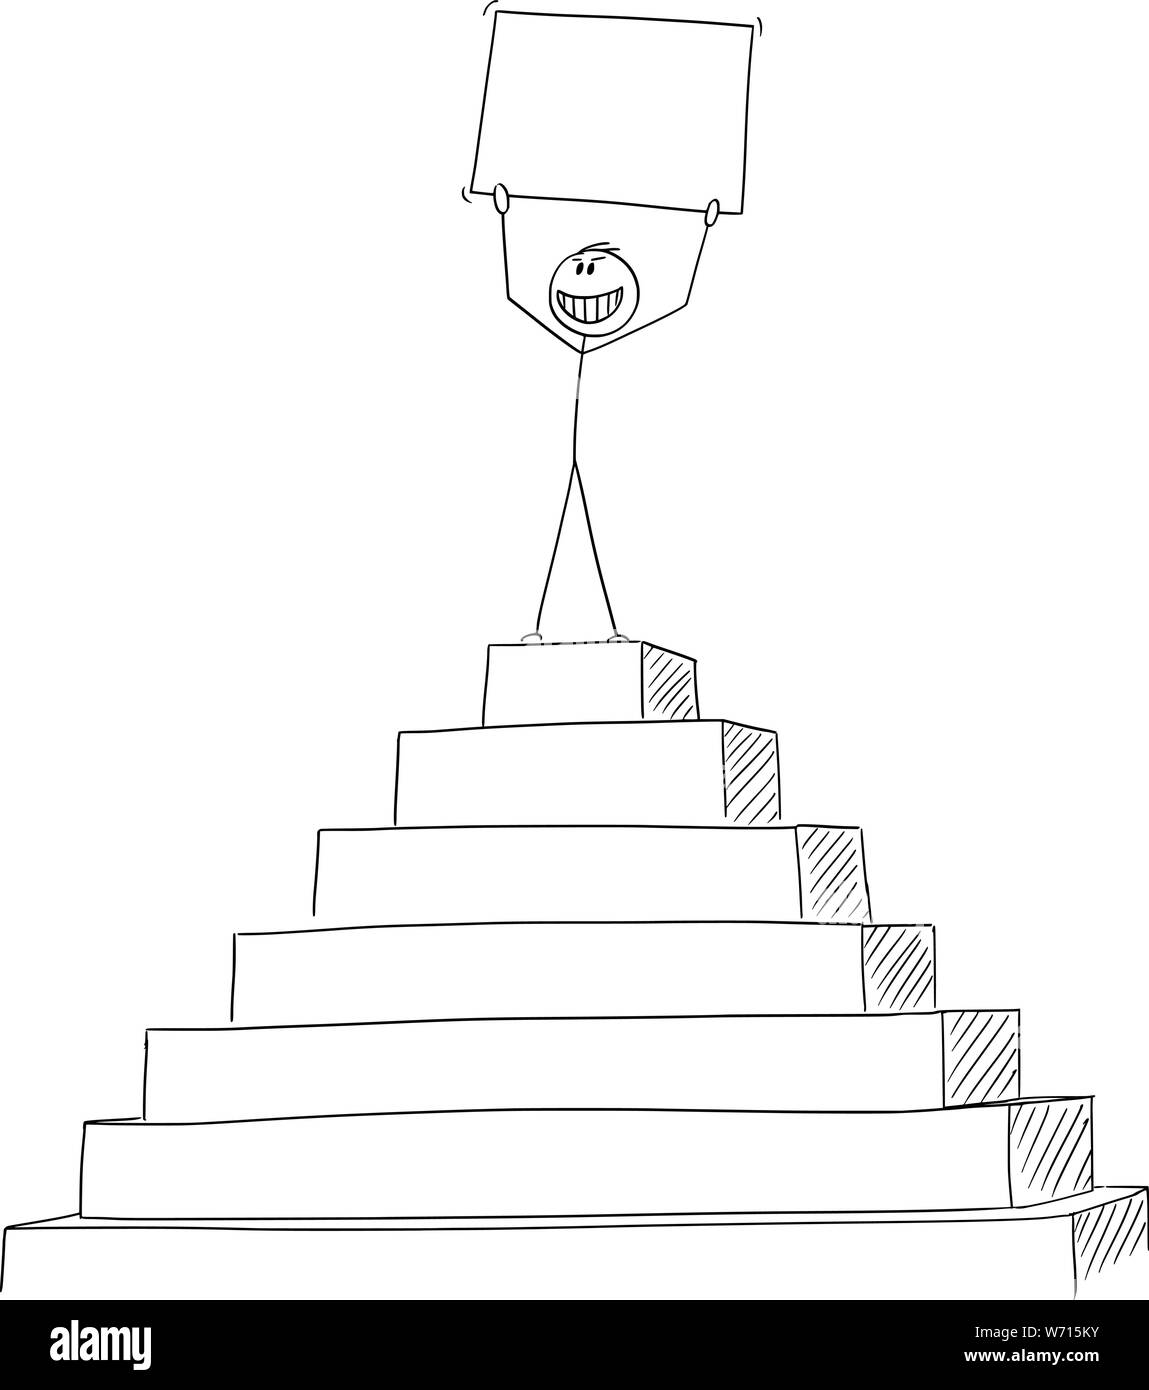 Vektor cartoon Strichmännchen Zeichnen konzeptionelle Darstellung der erfolgreichen Mann oder Geschäftsmann Erfolg feiern auf der Spitze der Pyramide mit leeren Zeichen in den Händen. Stock Vektor